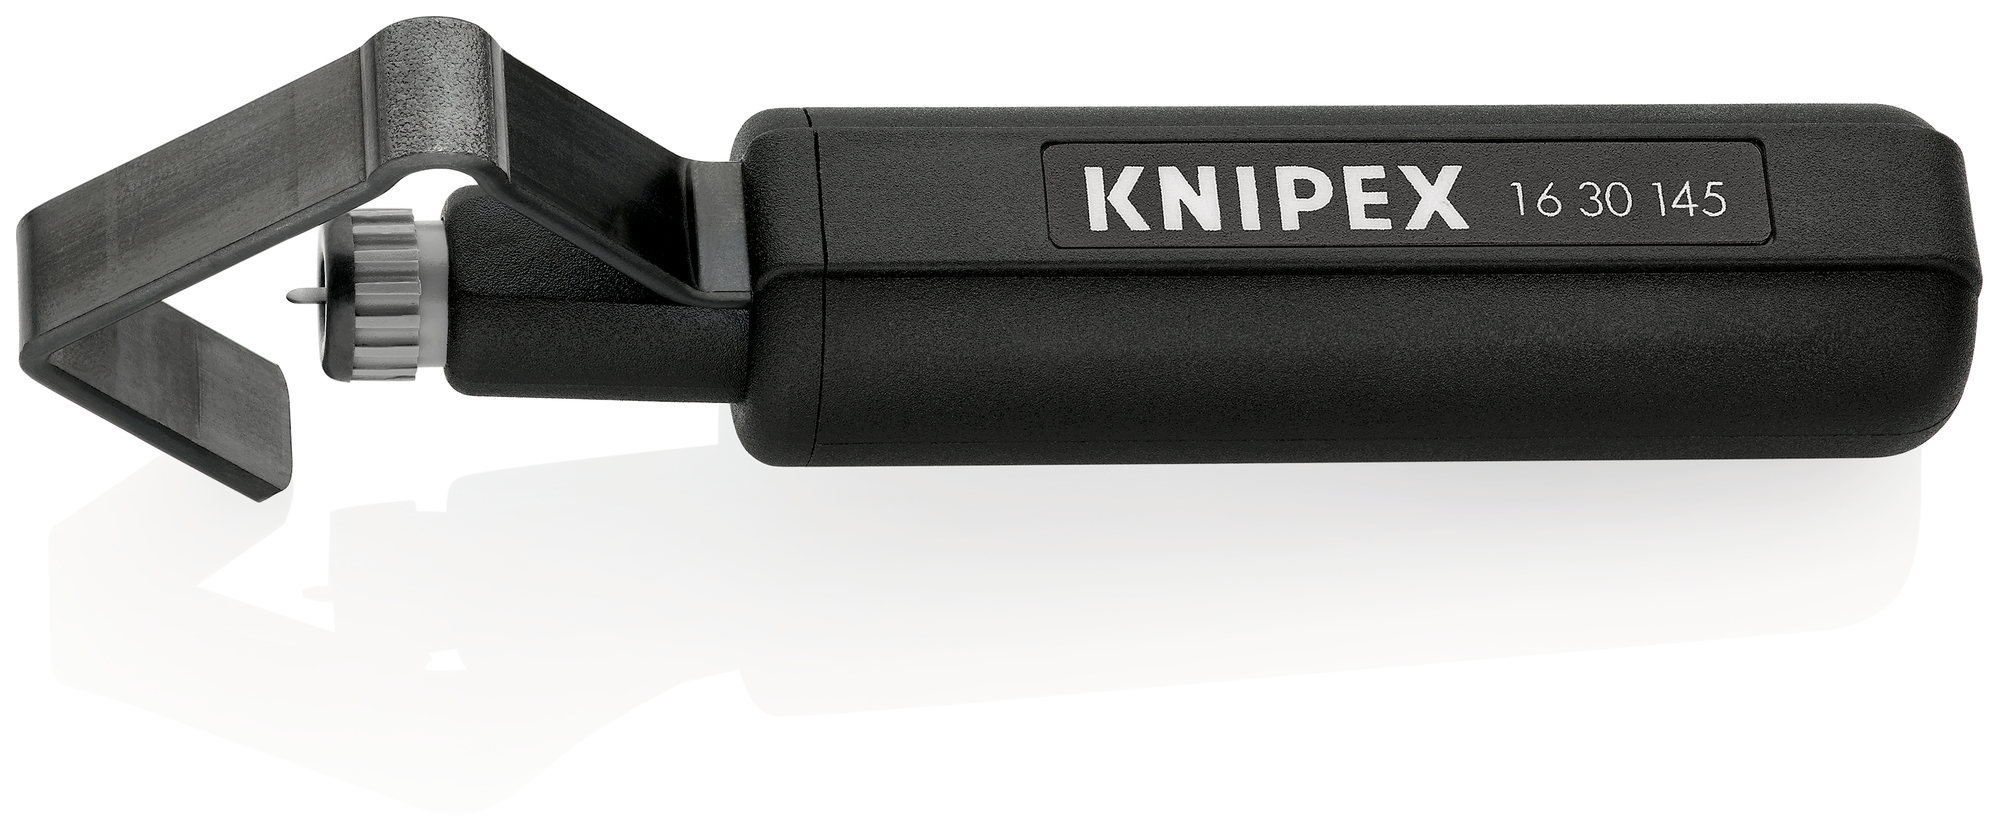 KNIPEX Nôž odplášťovací 1630145SB